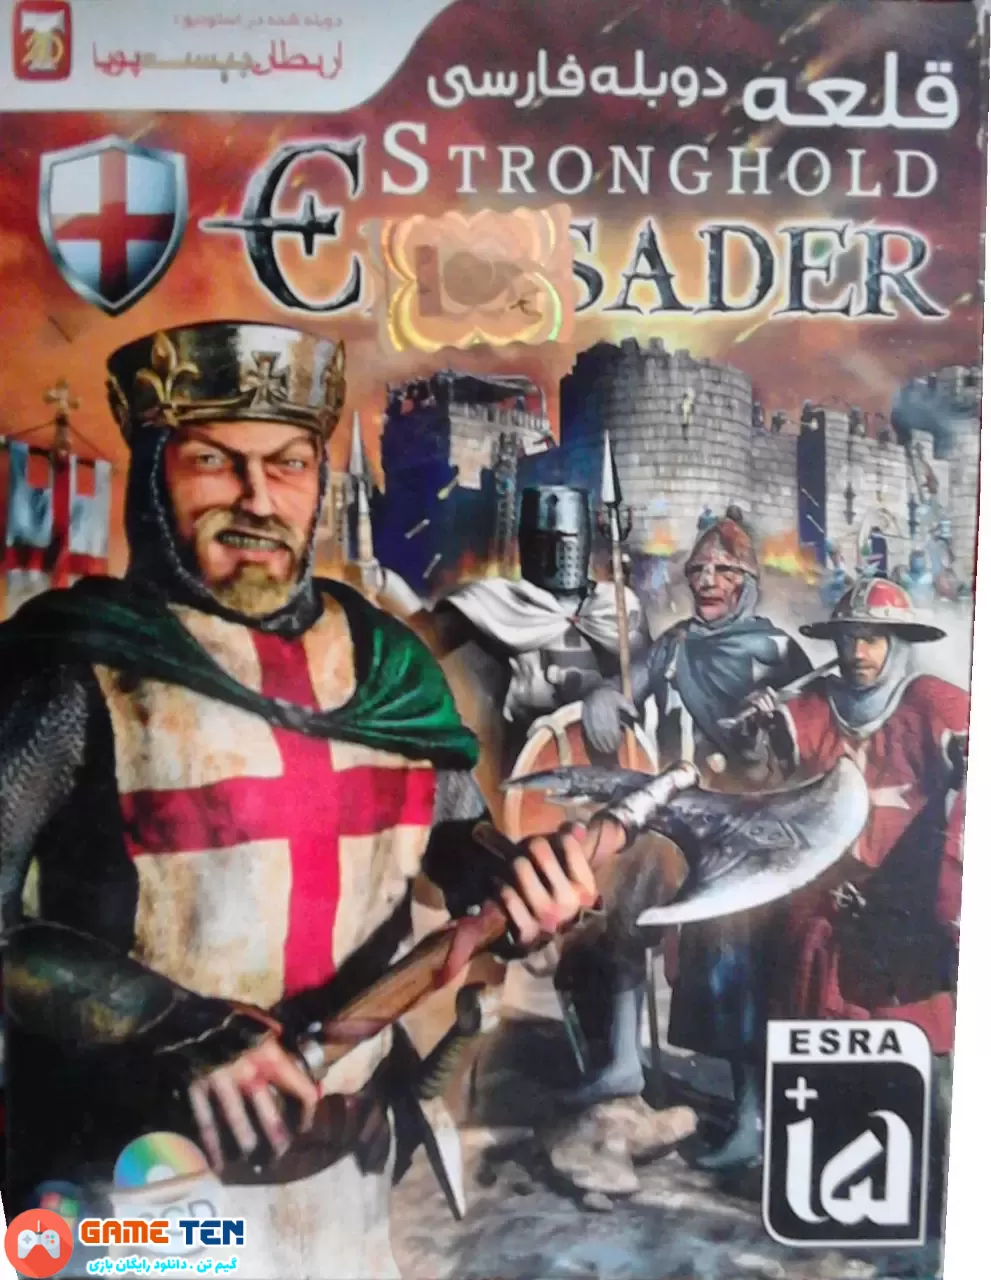 دانلود Stronghold Crusader 1 - دوبله فارسی جنگ های صلیبی نسخه اصلی